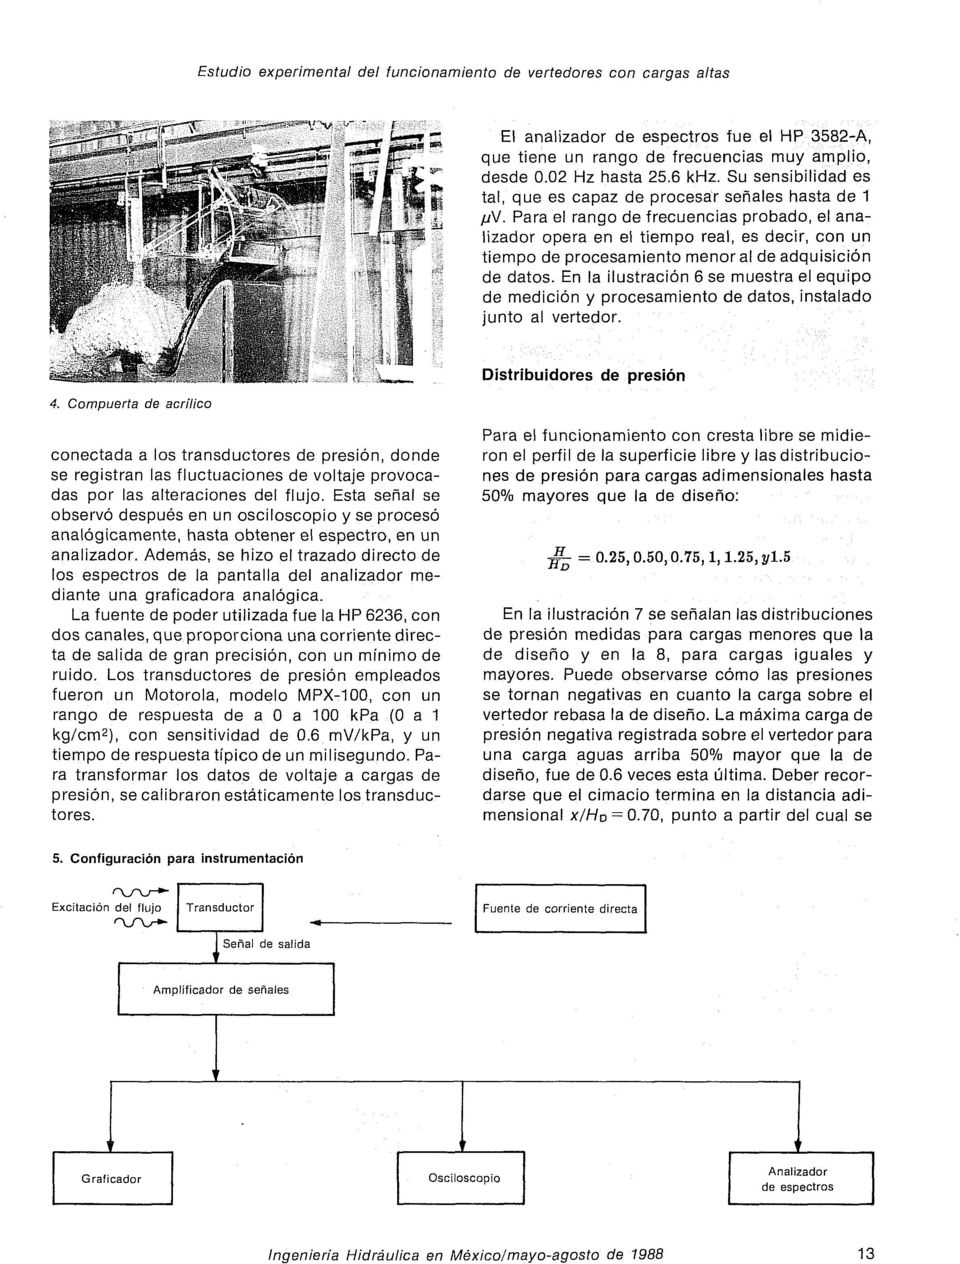 adquisición de datos. En la ilustración 6 se muestra el equipo de medición y procesamiento de datos, instalado junto al vertedor.